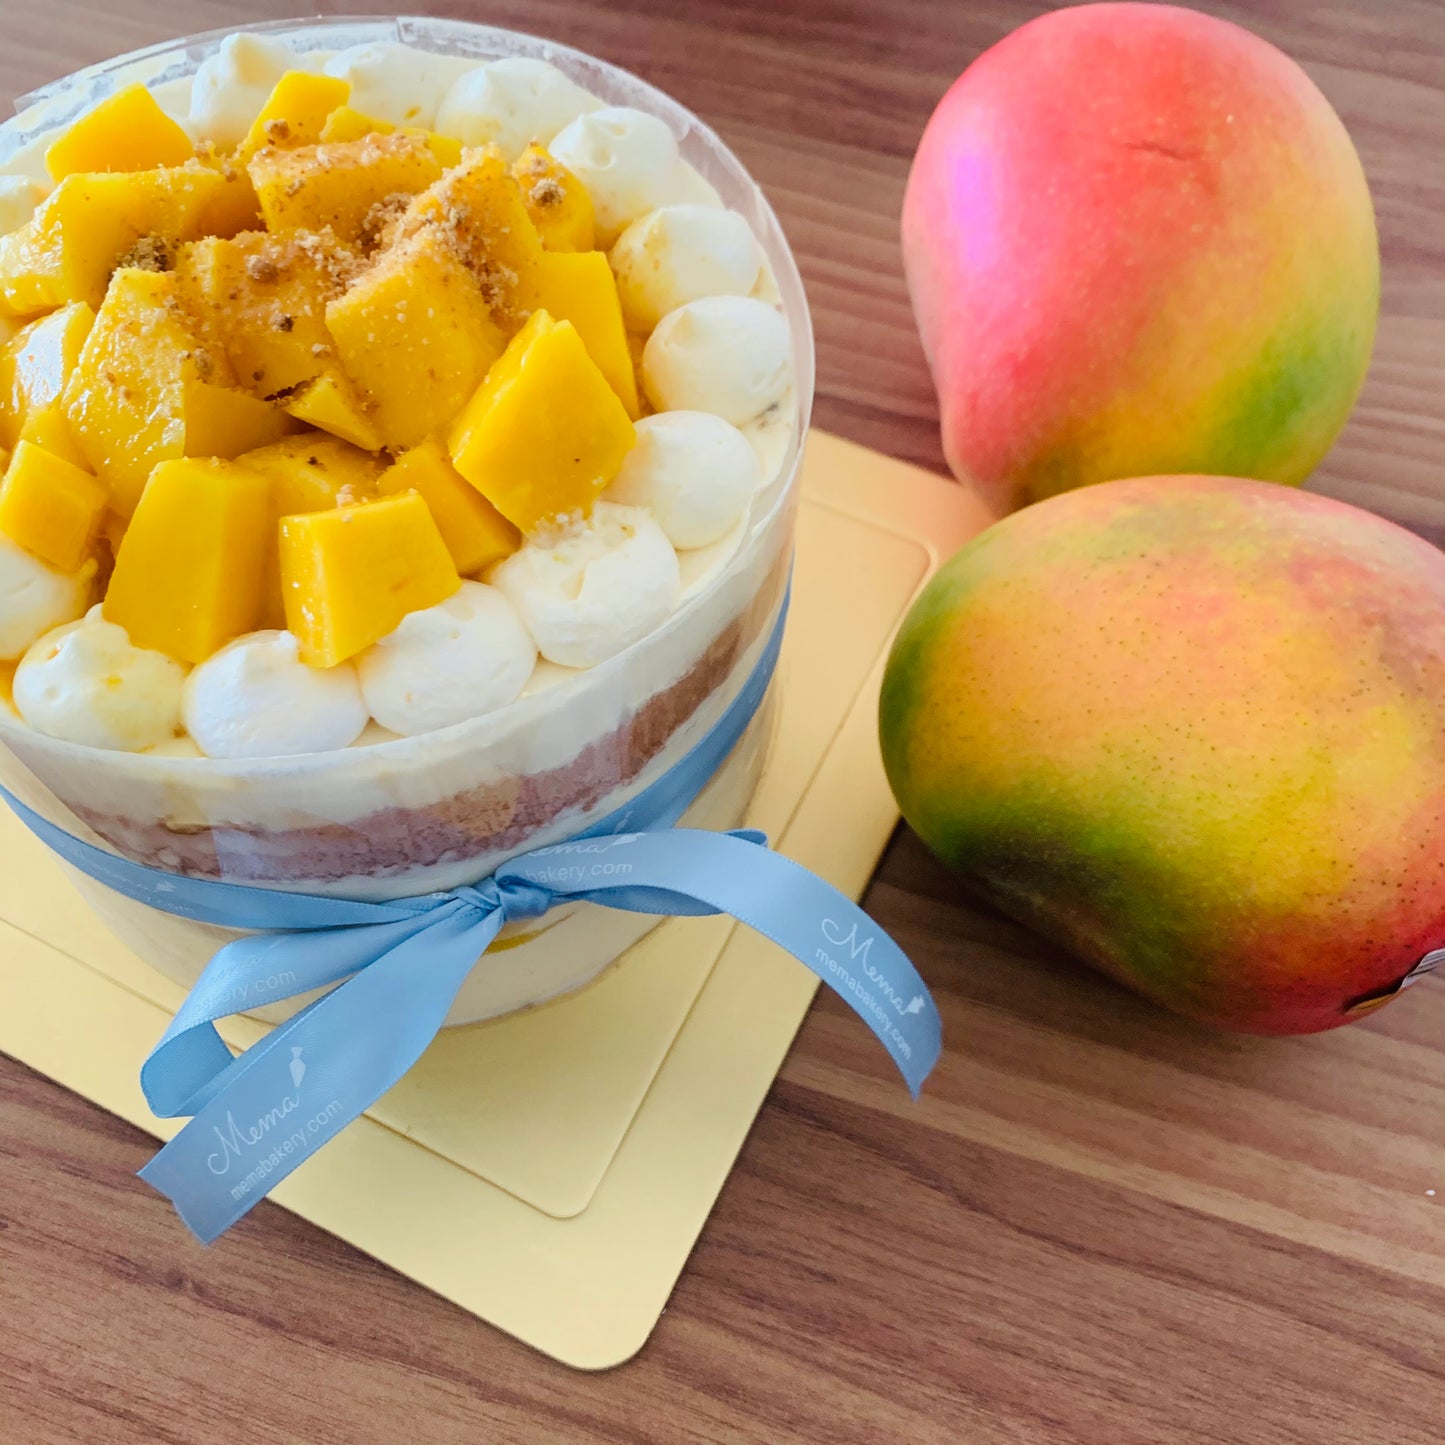 Learn: Mango Short Cake